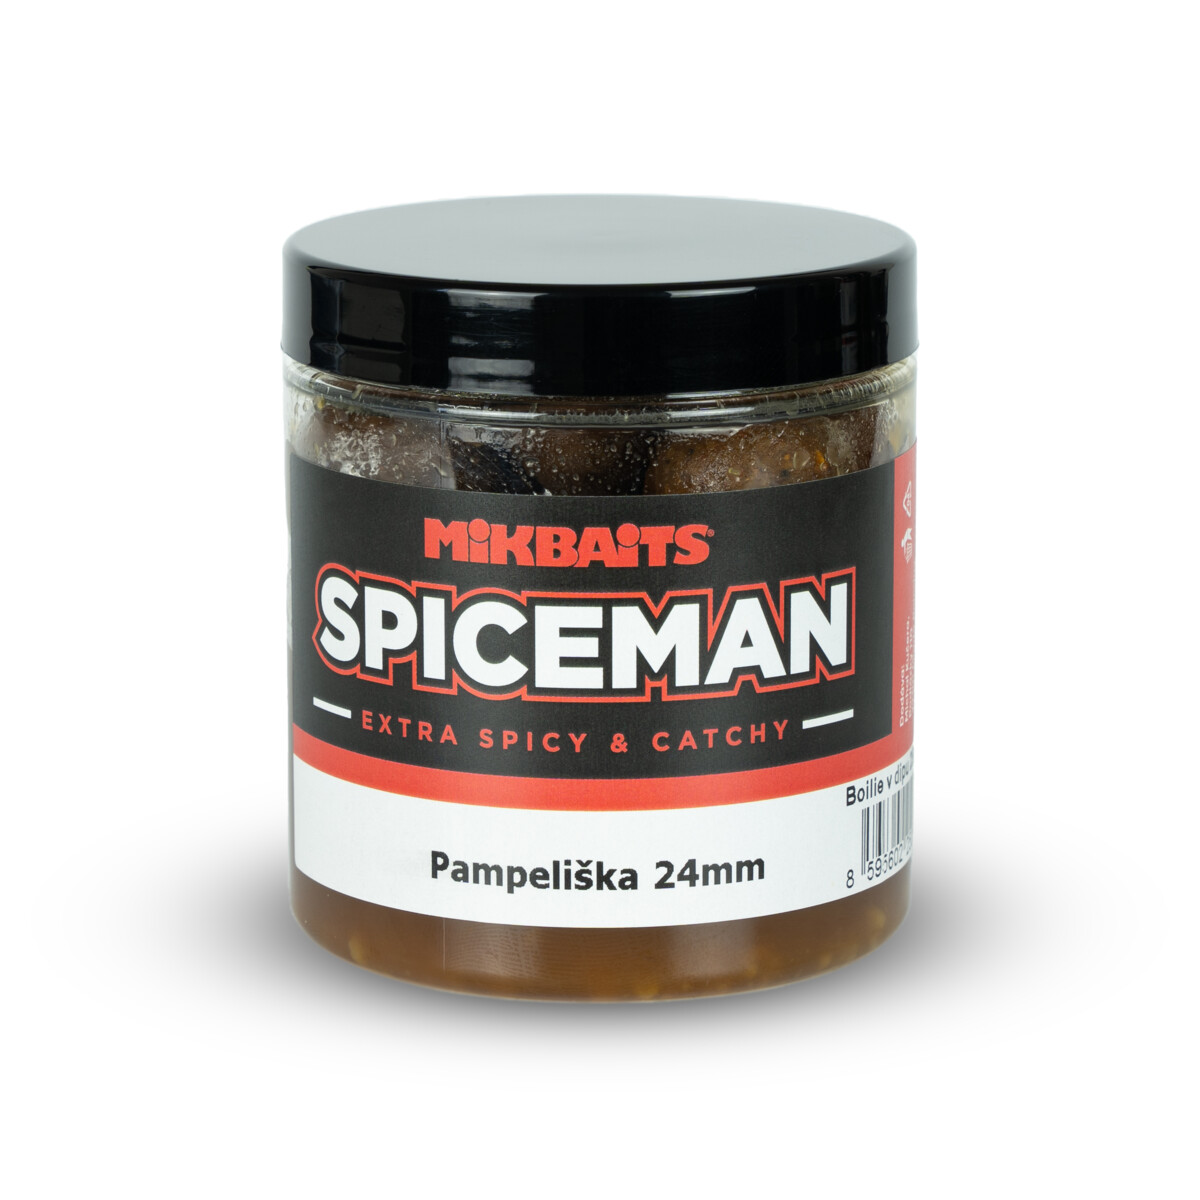 MIKBAITS Spiceman boilie v dipu 250ml - Pampeliška 24mm